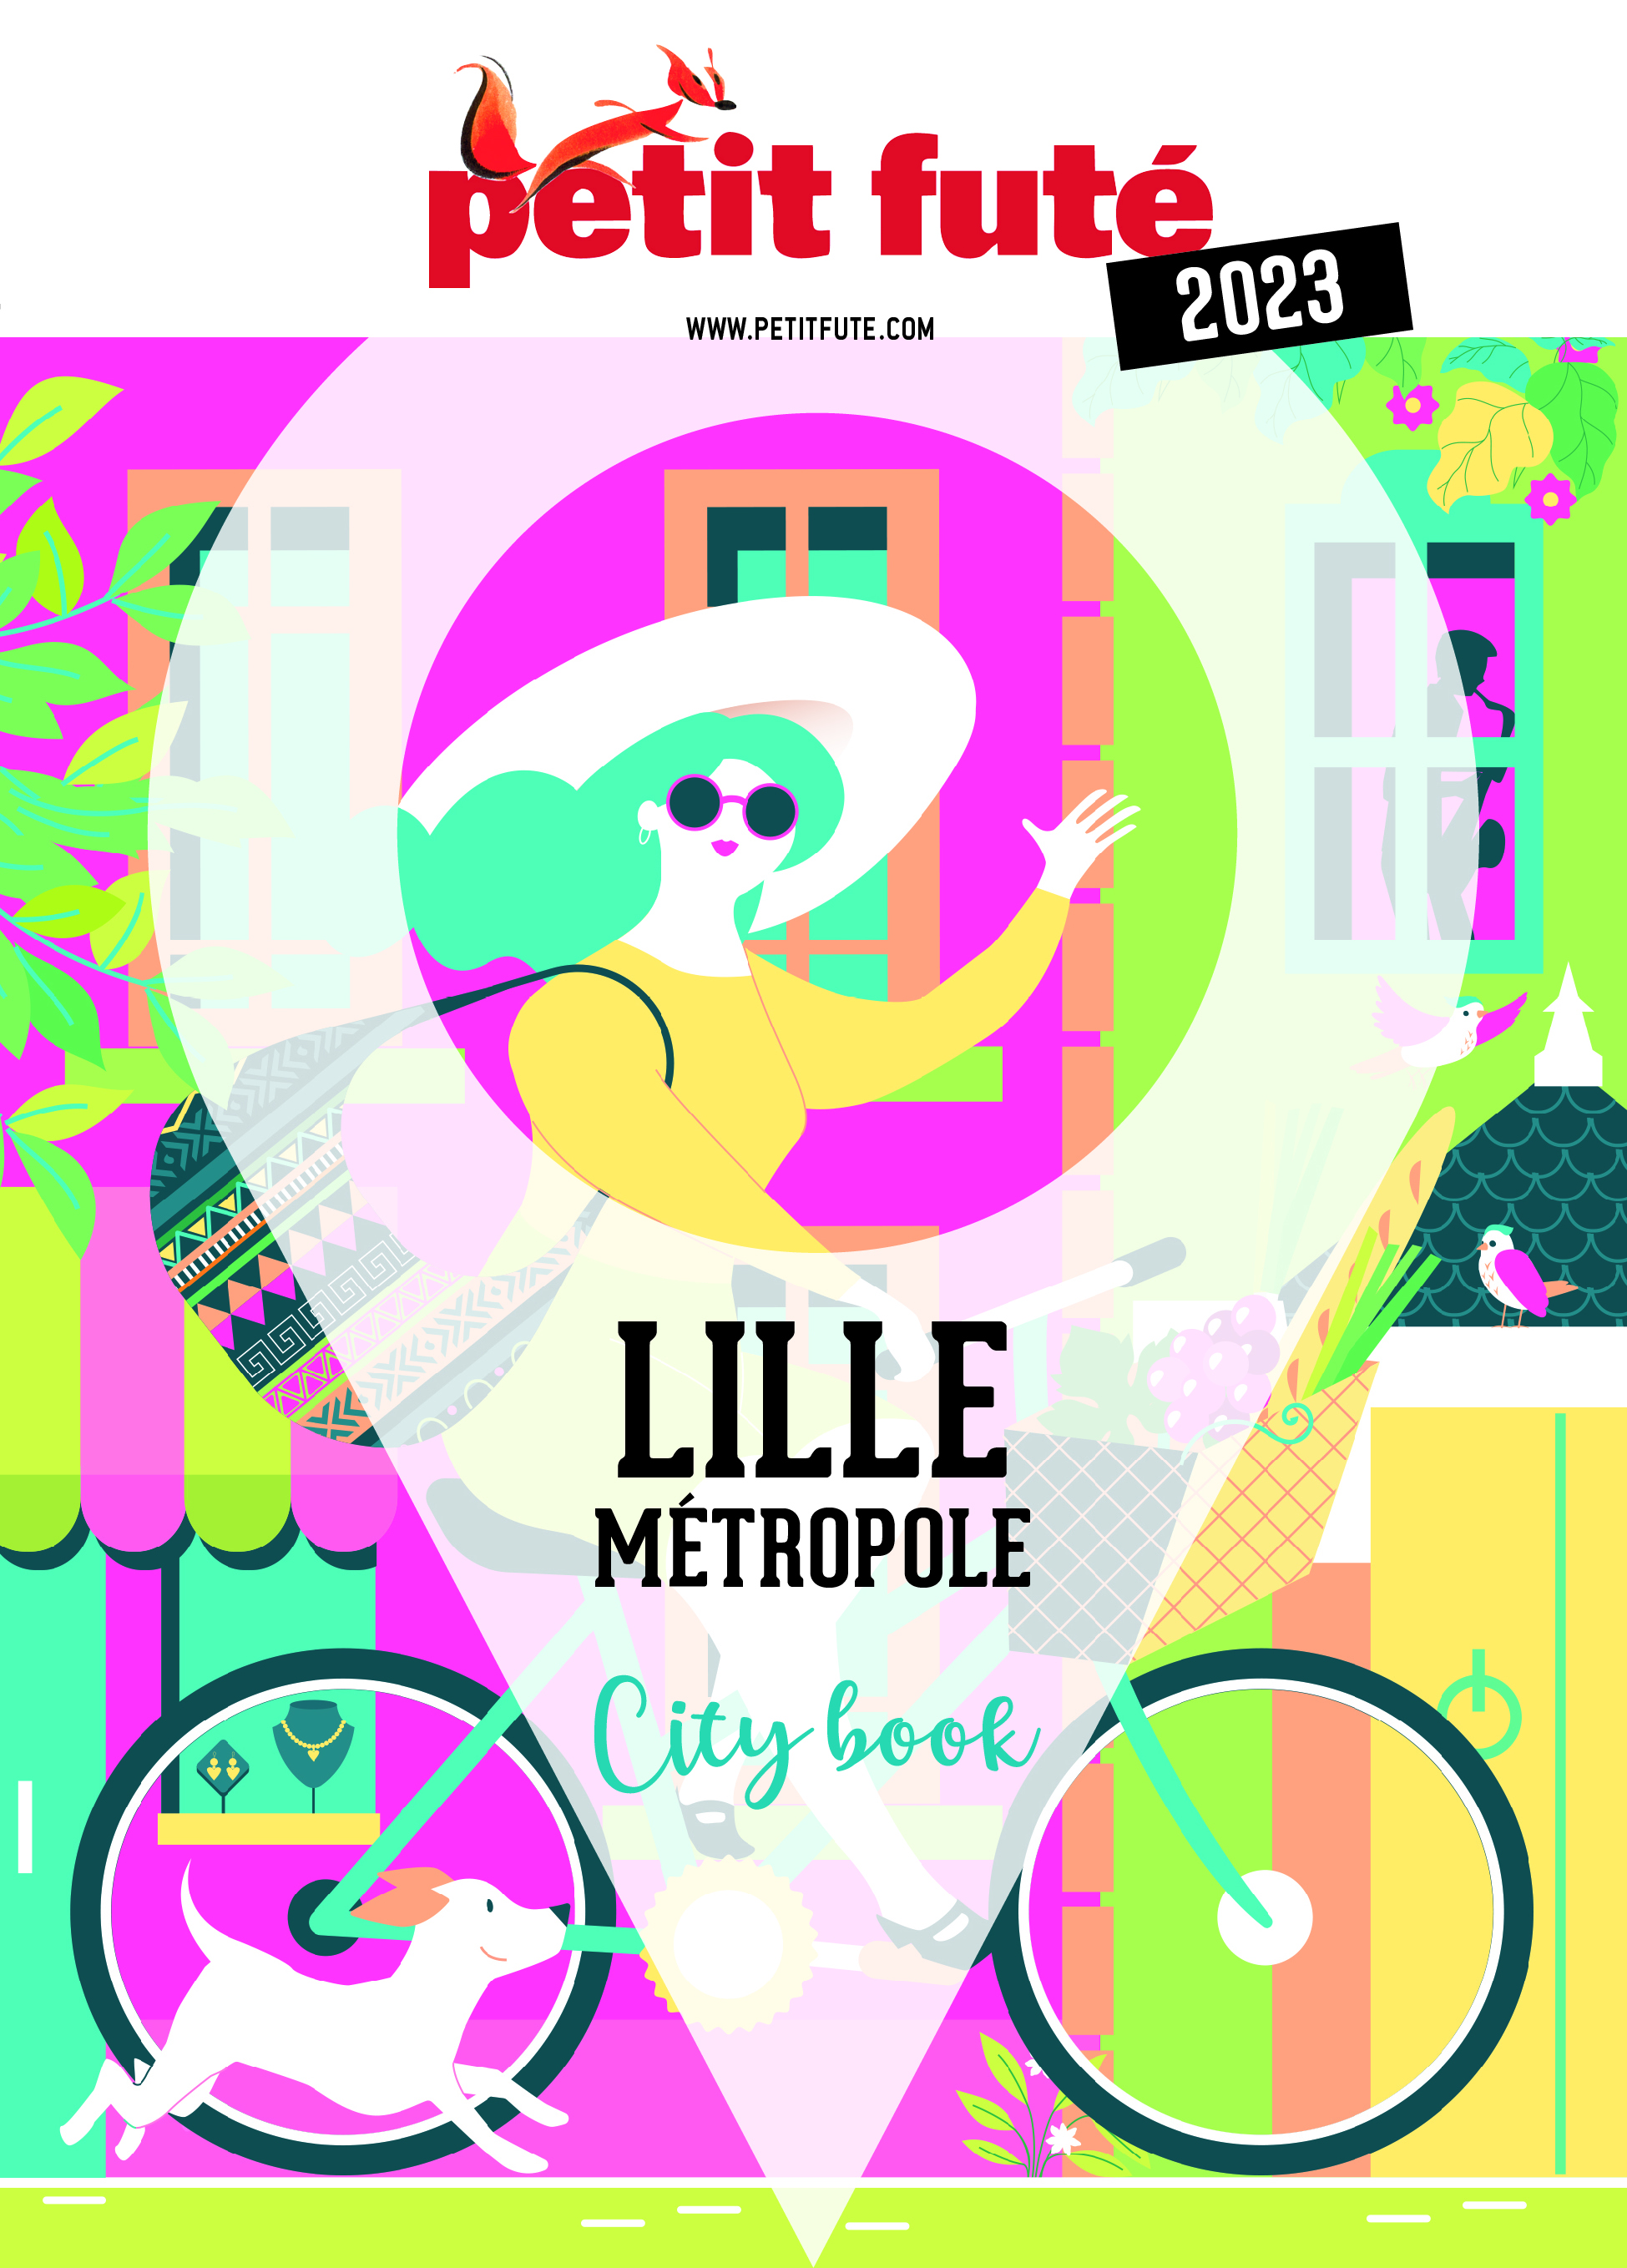 Profiter pleinement de la métropole lilloise avec les city-books du Petit Futé.